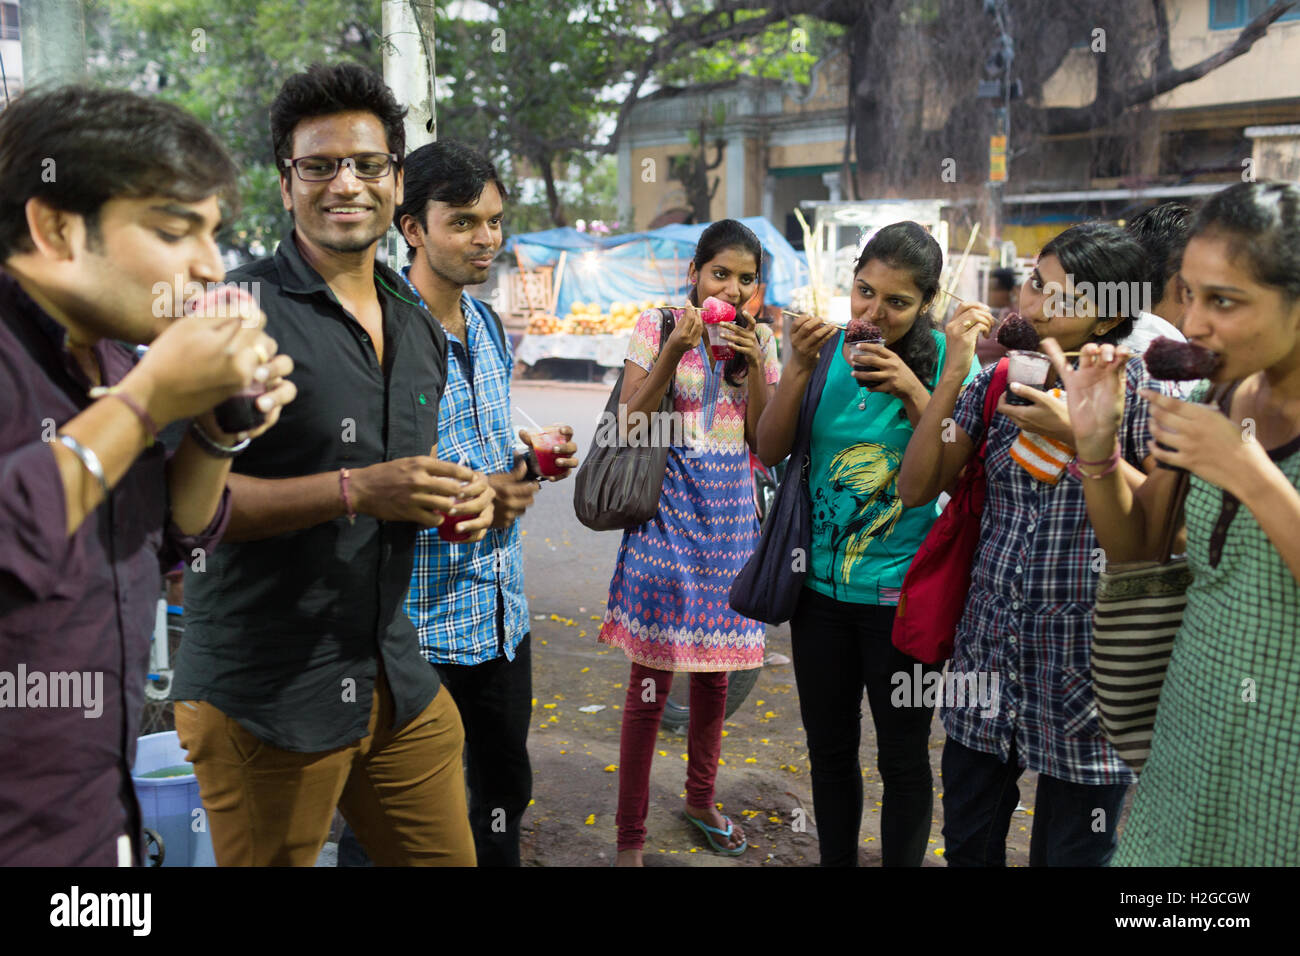 Gruppe von jungen Indianern Essen rasiert Eis auch bekannt als Ice Gola in Hyderabad, Indien Stockfoto